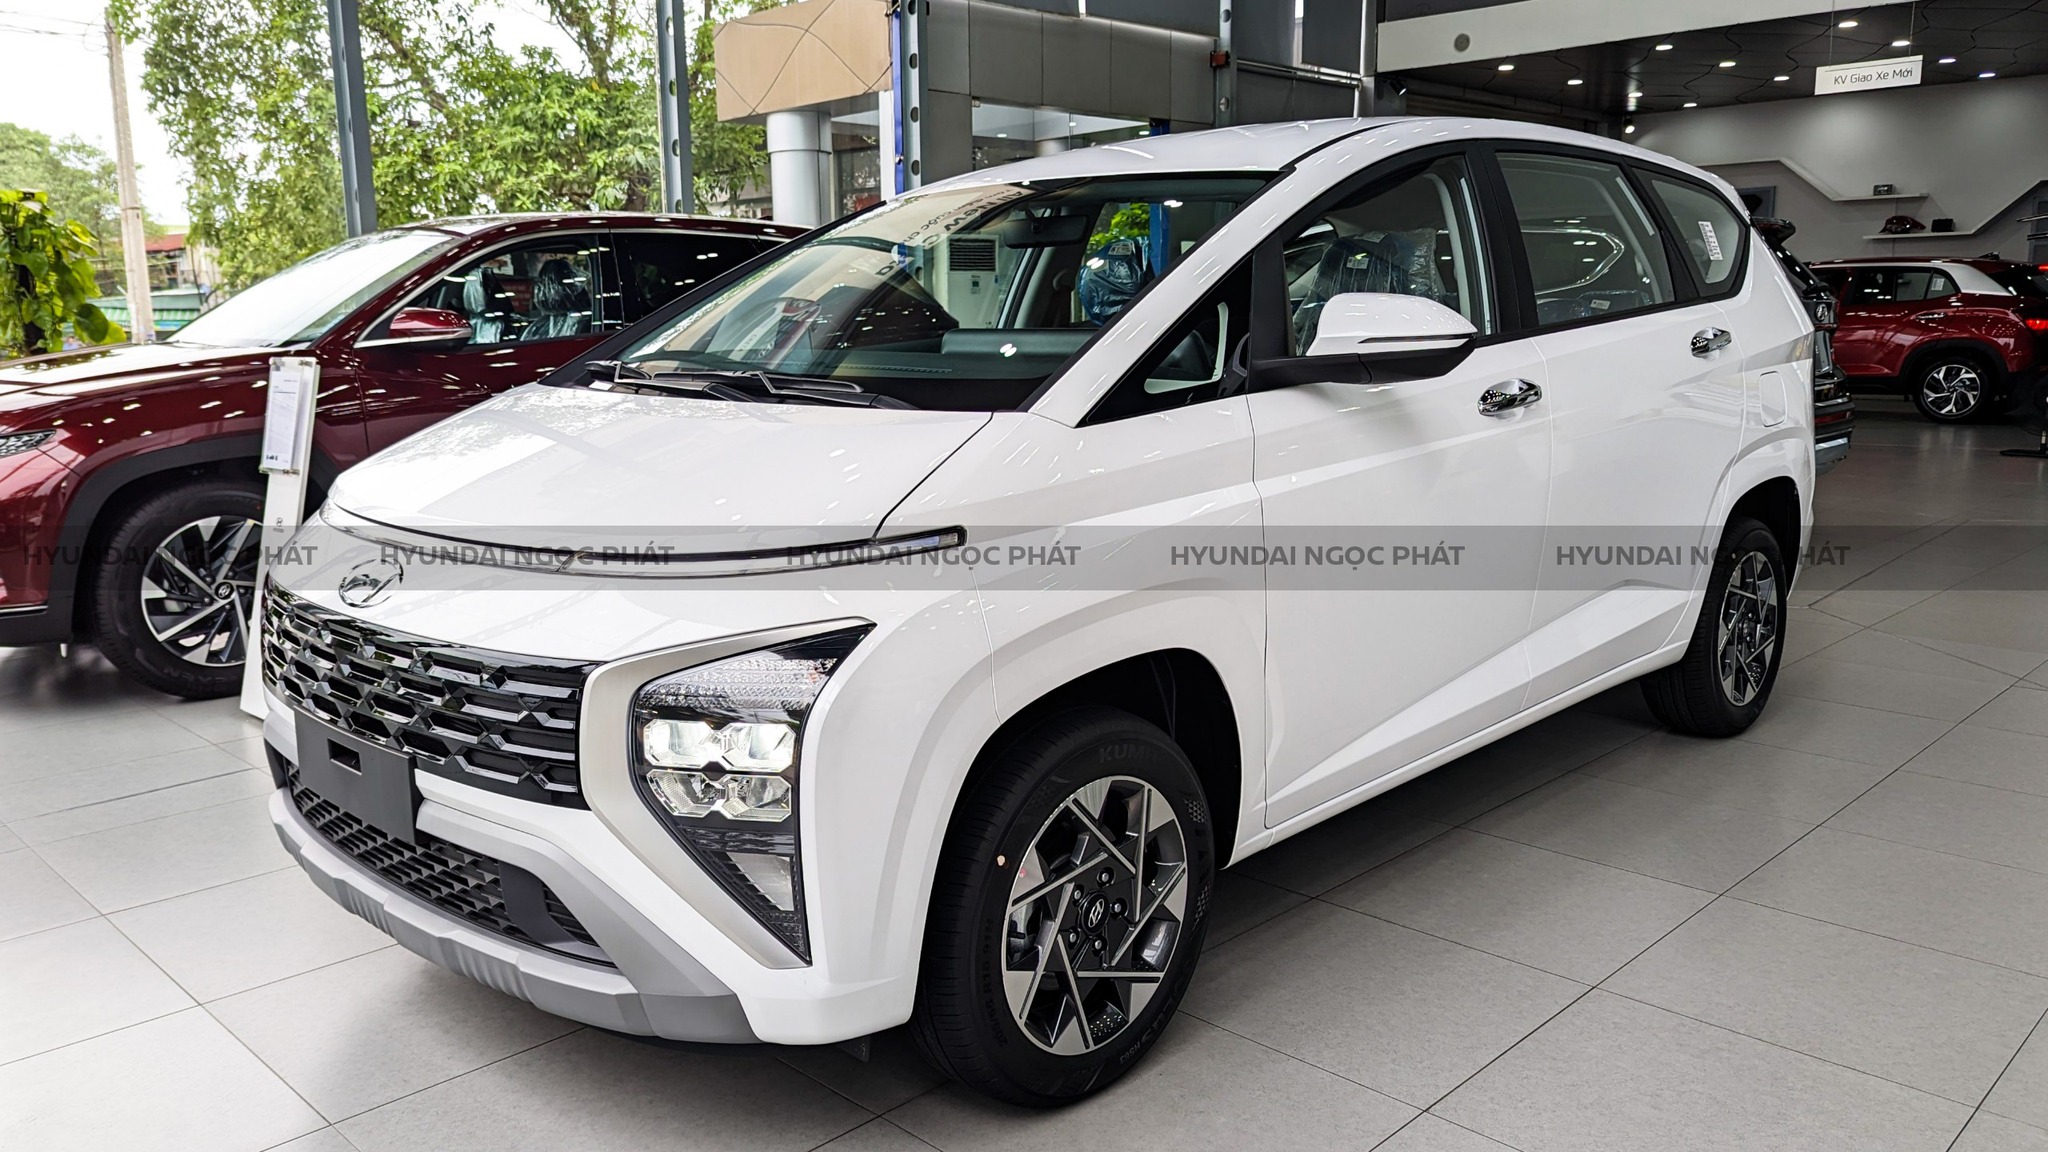 Hyundai ngọc phát đồng nai | khu vực trưng bày xe tại hyundai đồng nai